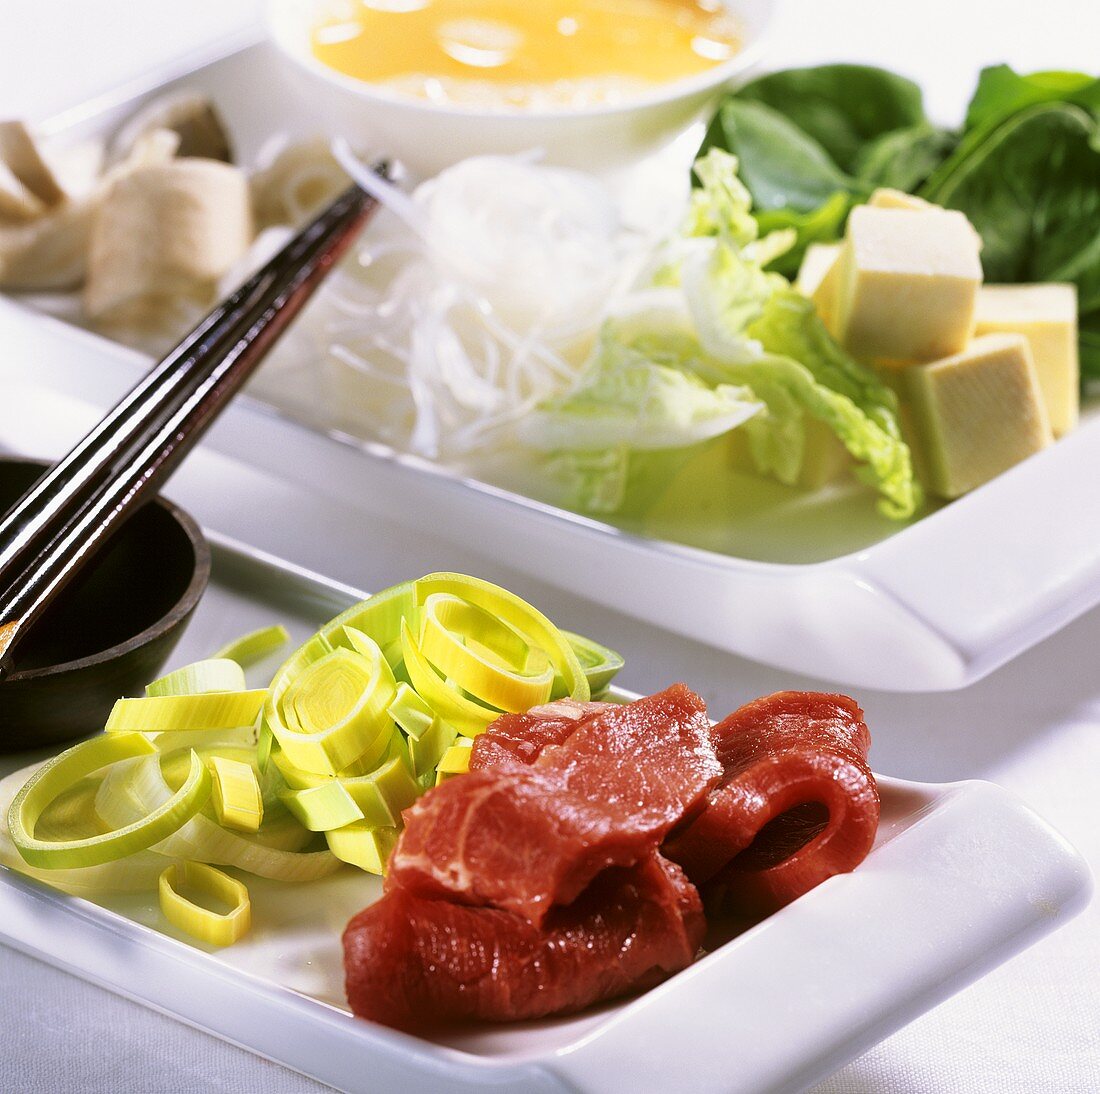 Ingredients for sukiyaki (Japan)